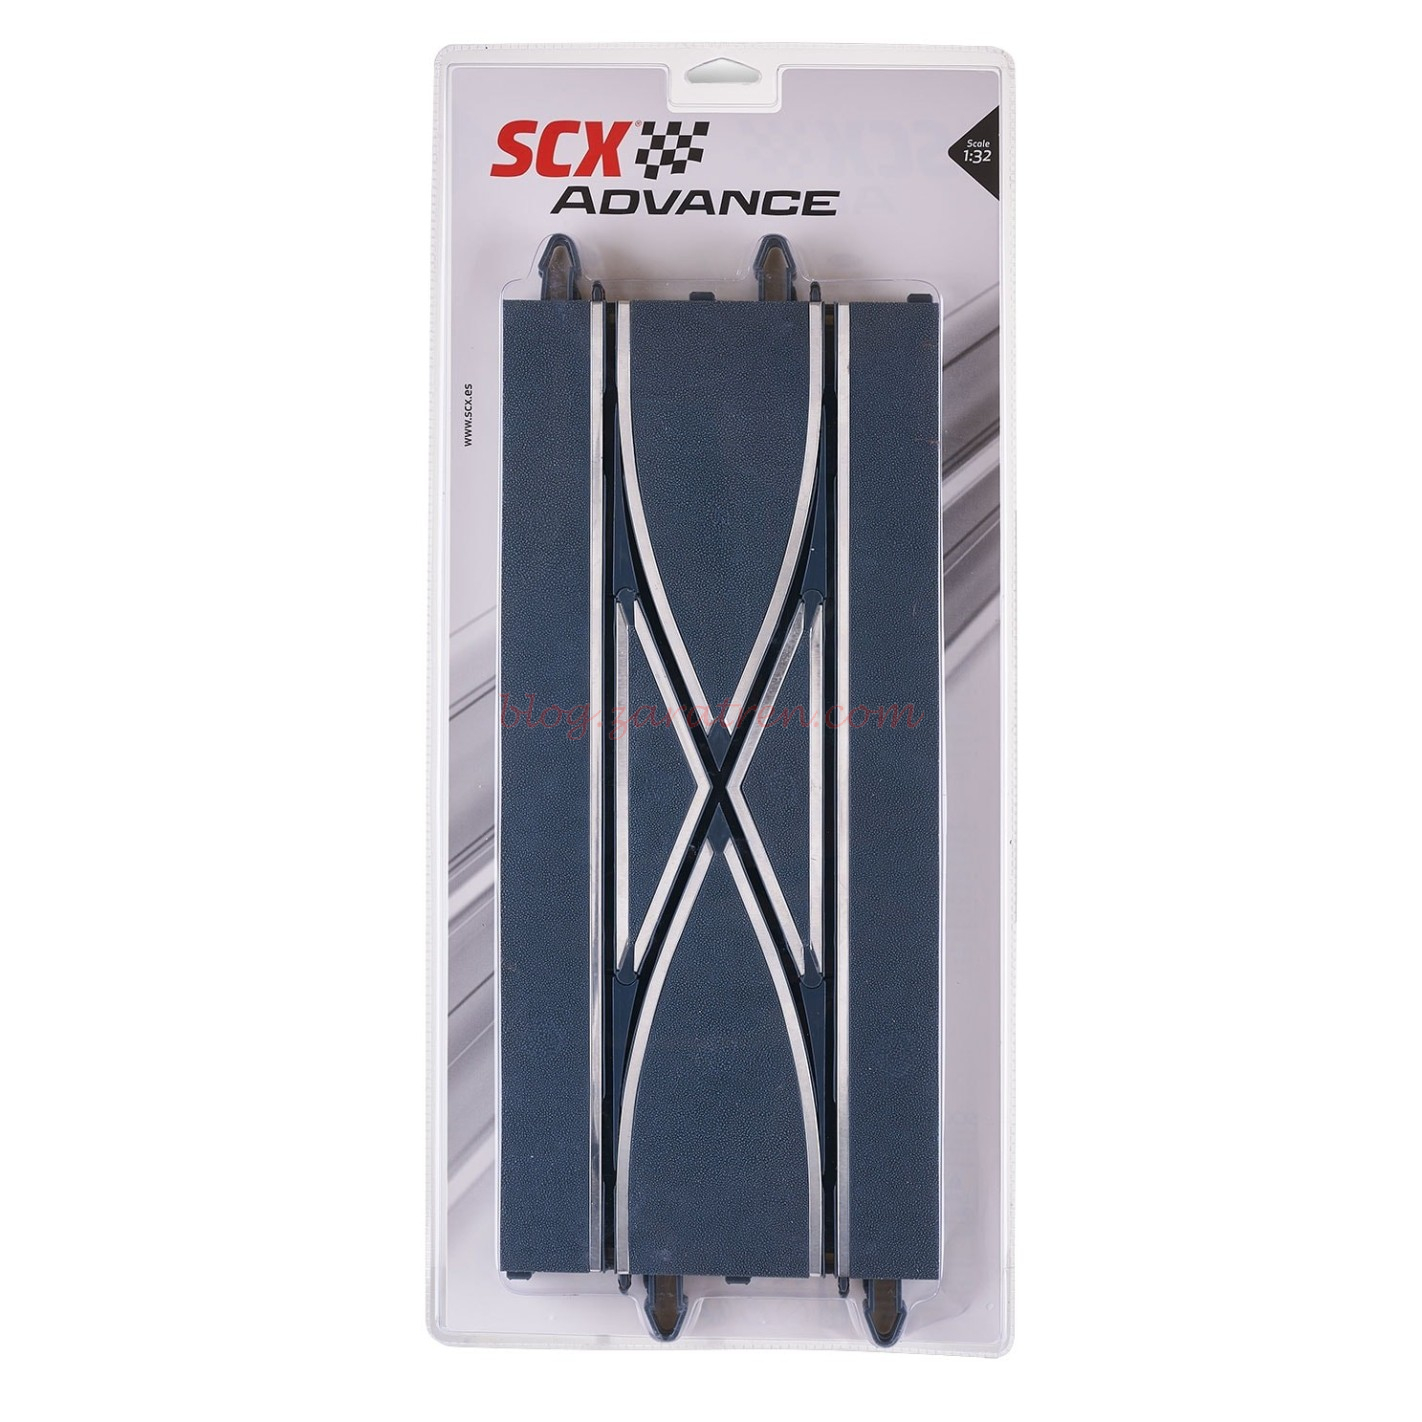 Scalextric – Pista Cambio de Carril Advance, Escala 1/32, Ref: E10288X200